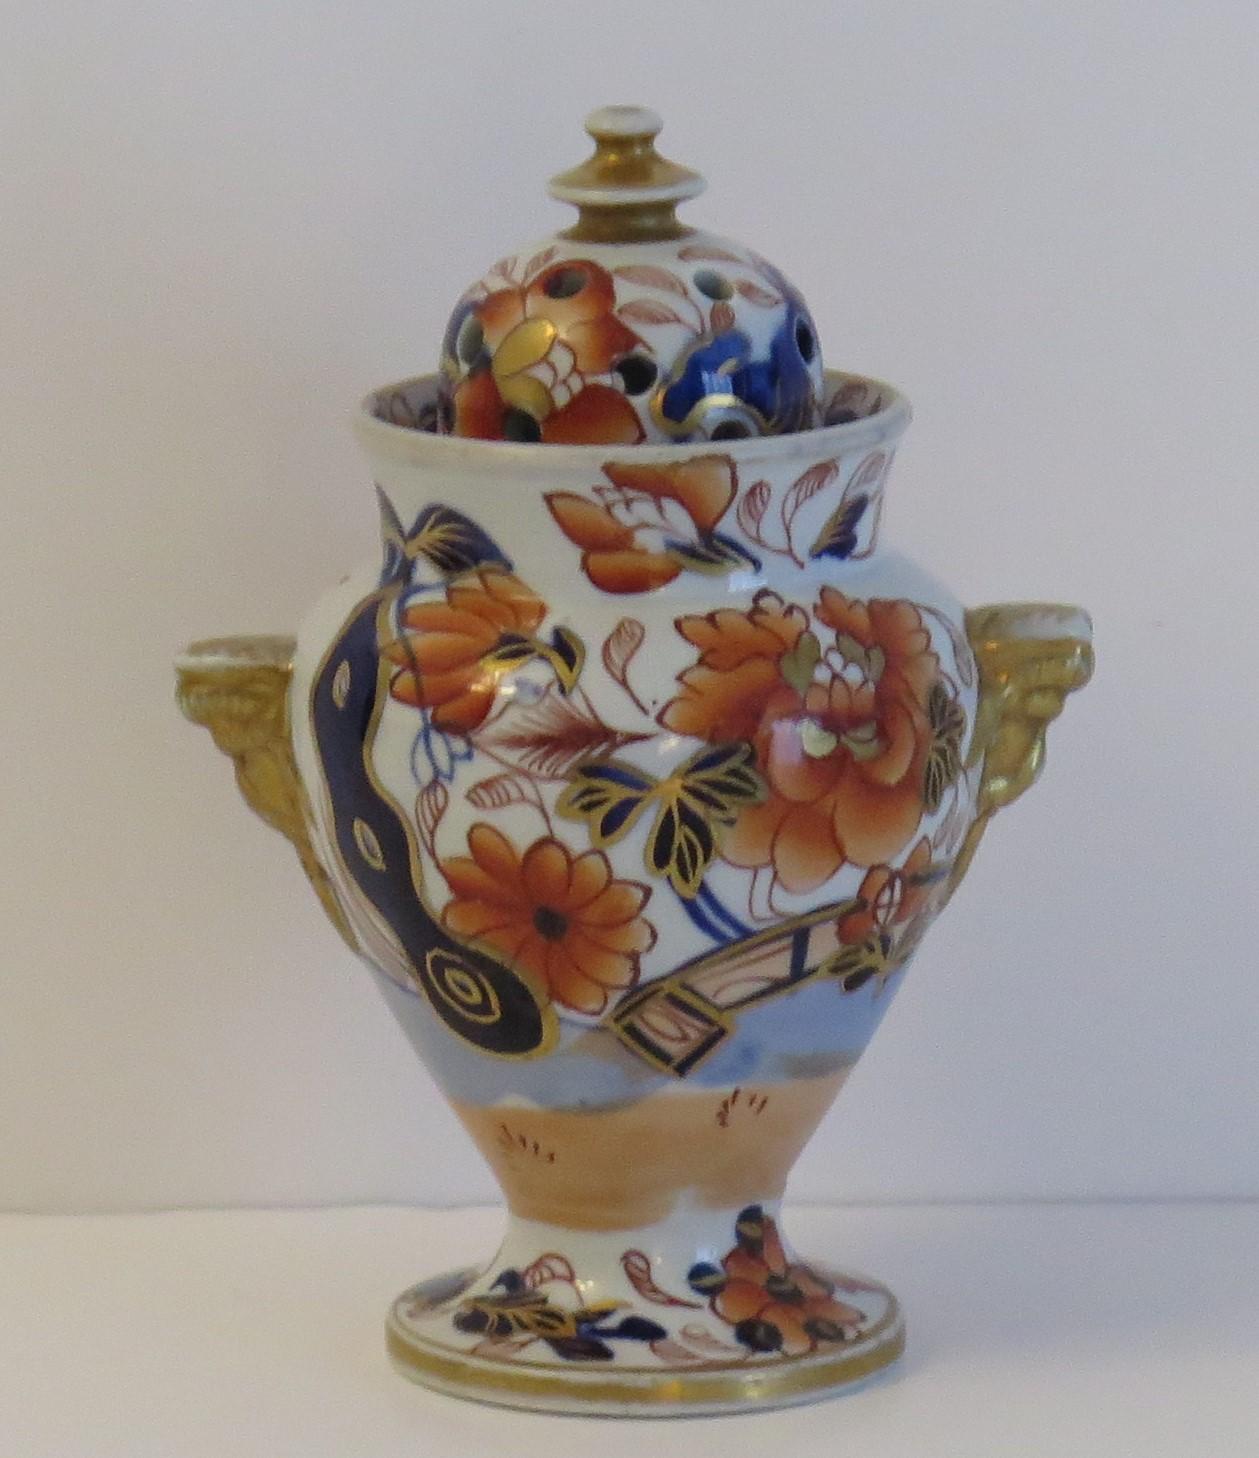 Il s'agit d'un rare vase à couvercle en pierre de fer, formant un vase Pot Pourri, dans le motif doré et peint à la main de CIRCA, fabriqué par l'usine Mason's au début du XIXe siècle, vers 1817.

Le vase a un bon profil balustre, avec deux